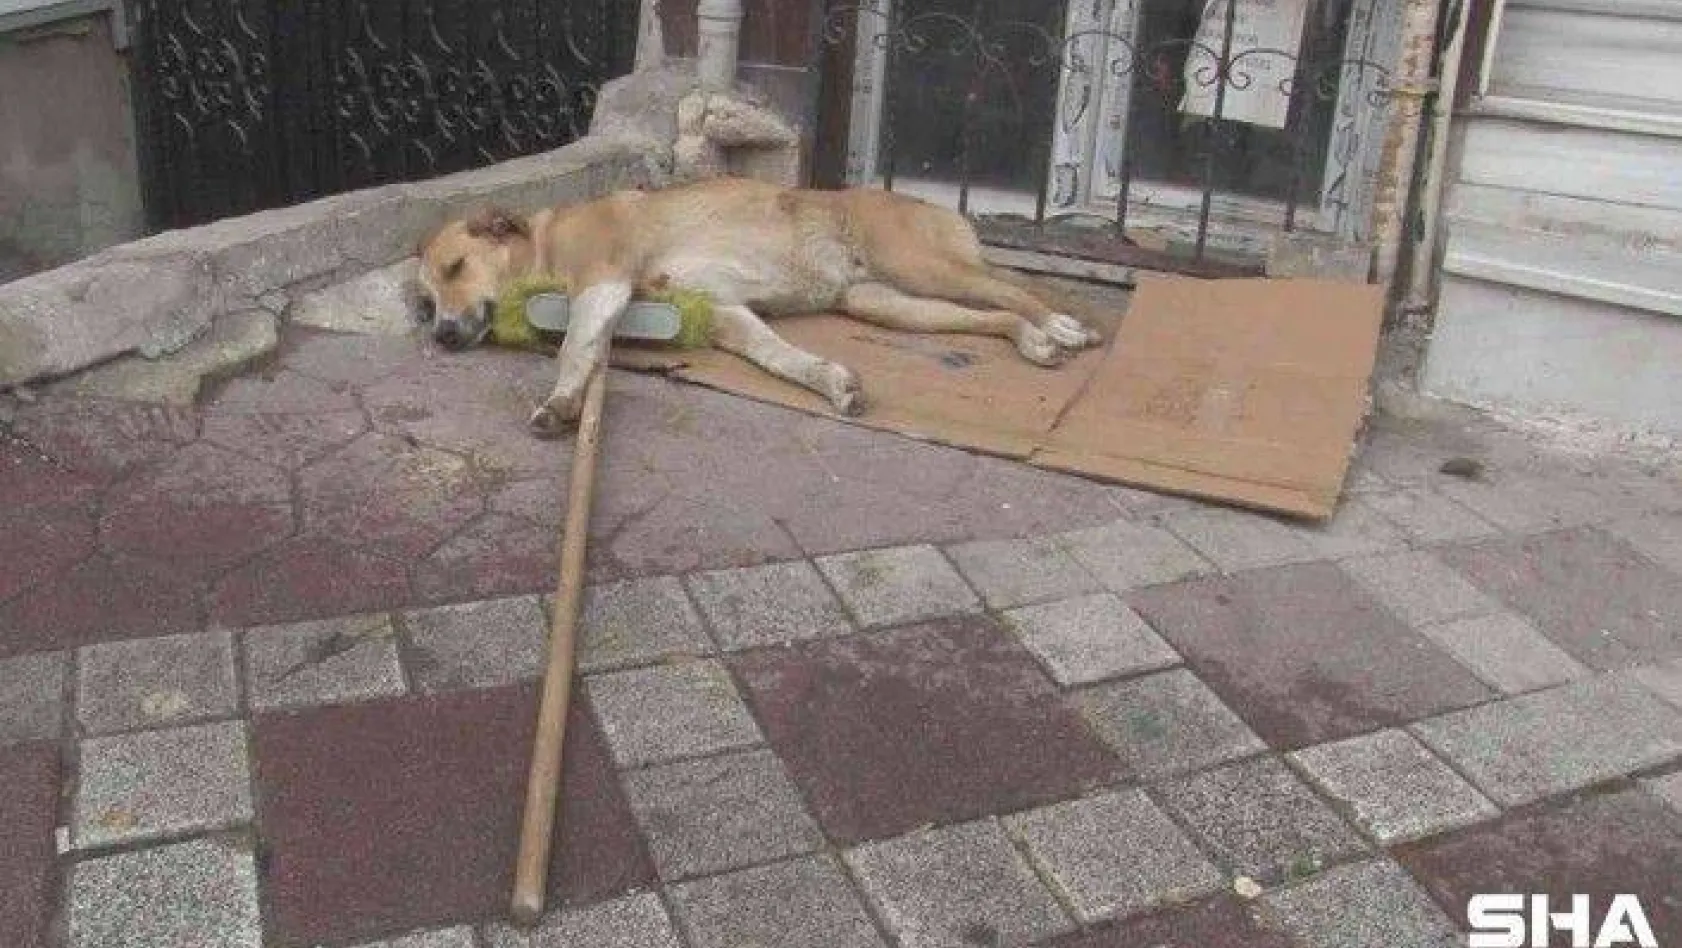 Temizlik işçisinin süpürgesini alıp kaçan sokak köpeği kamerada